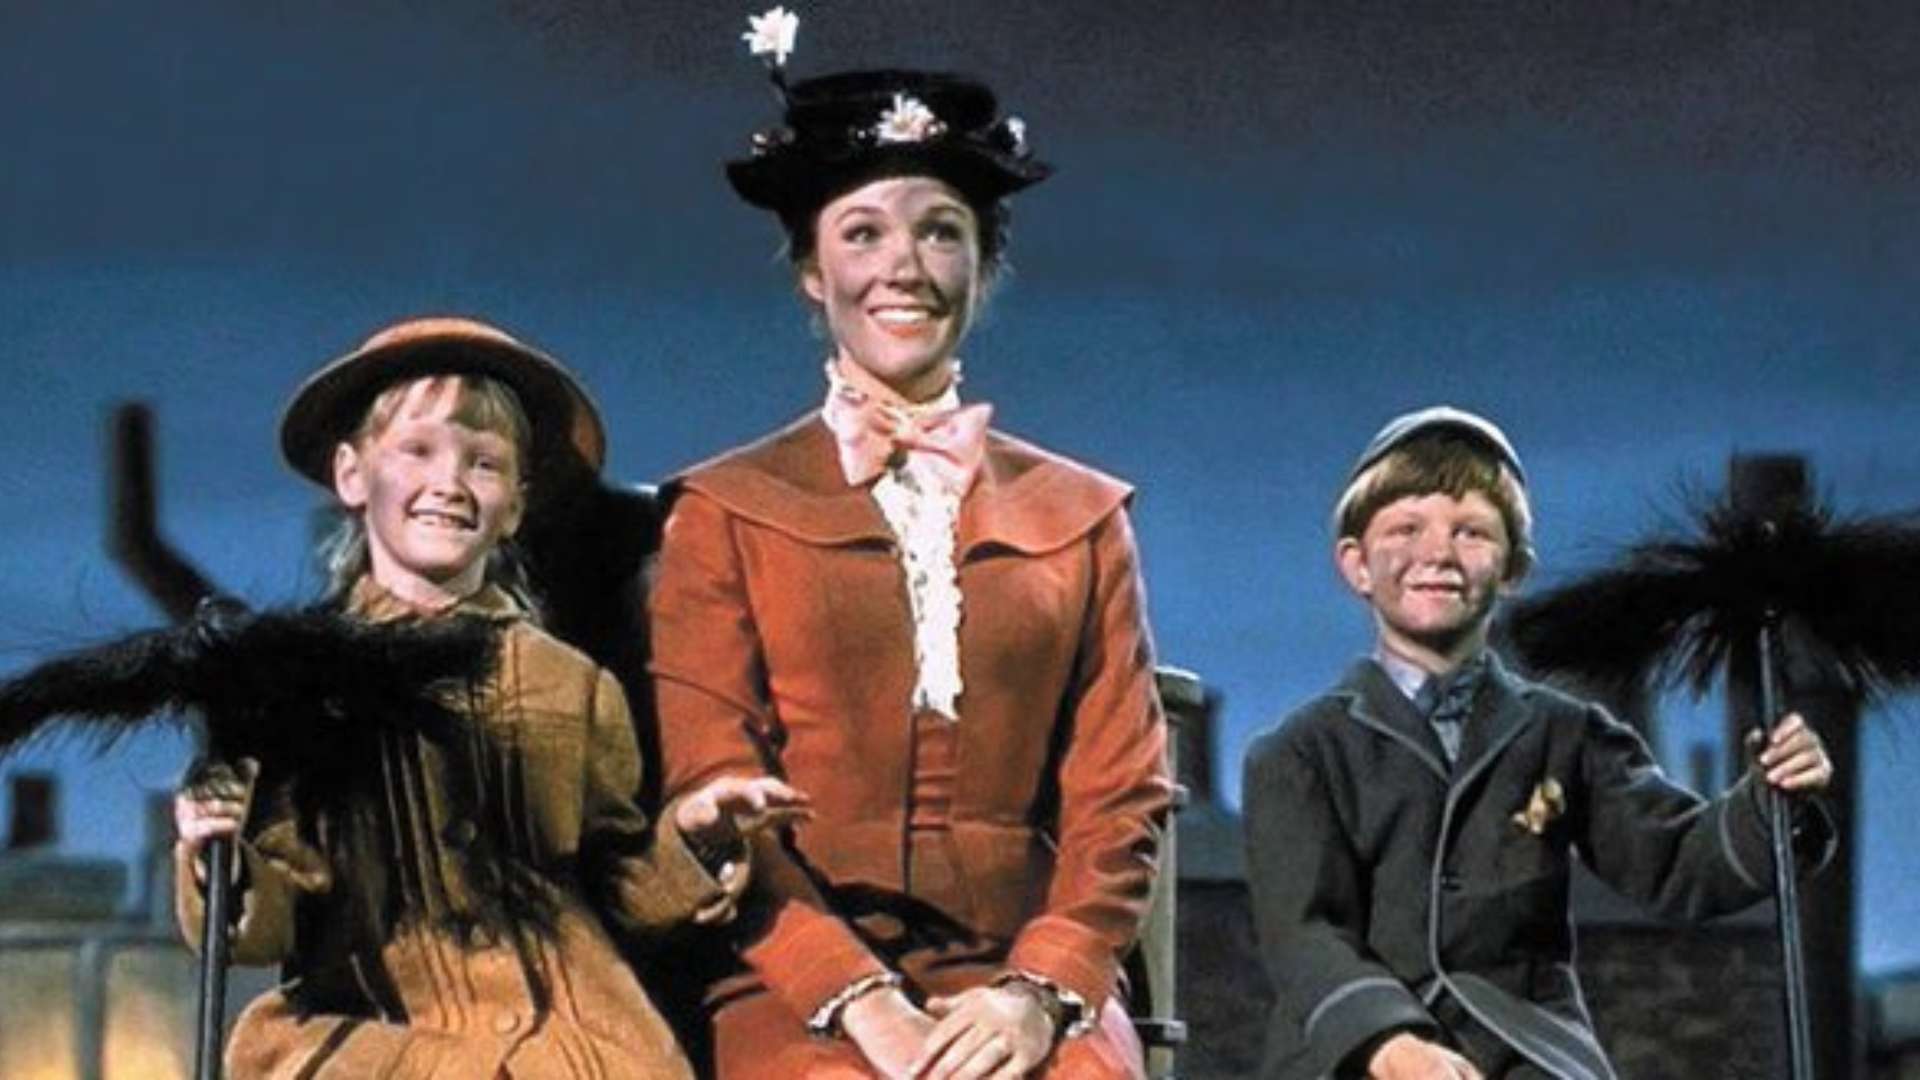 La agencia británica de calificación de películas le ha retirado la calificación apta para todos los públicos a Mary Poppins